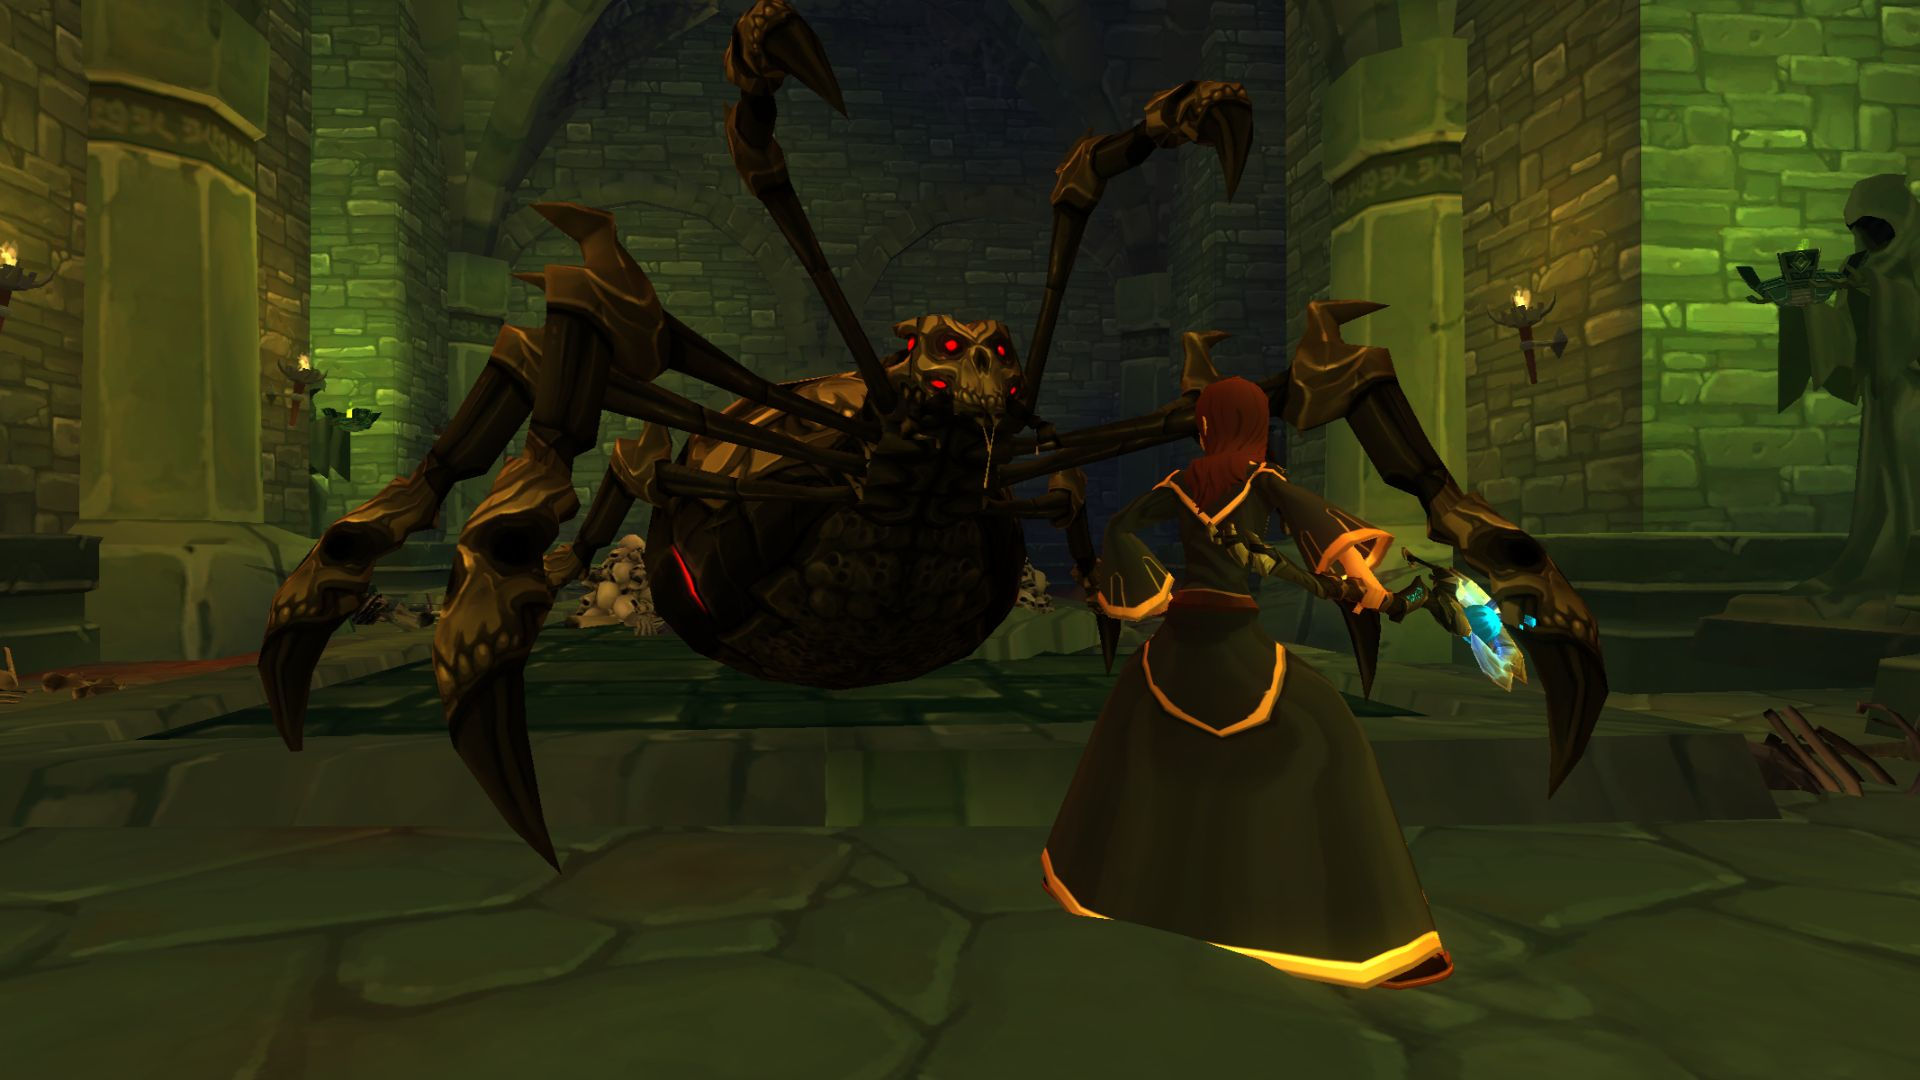 أفضل MMORPGs Mobile: Adventure Quest 3D. تُظهر الصورة ماجيًا على وشك محاربة عنكبوت عملاق برأس يشبه الجماجم